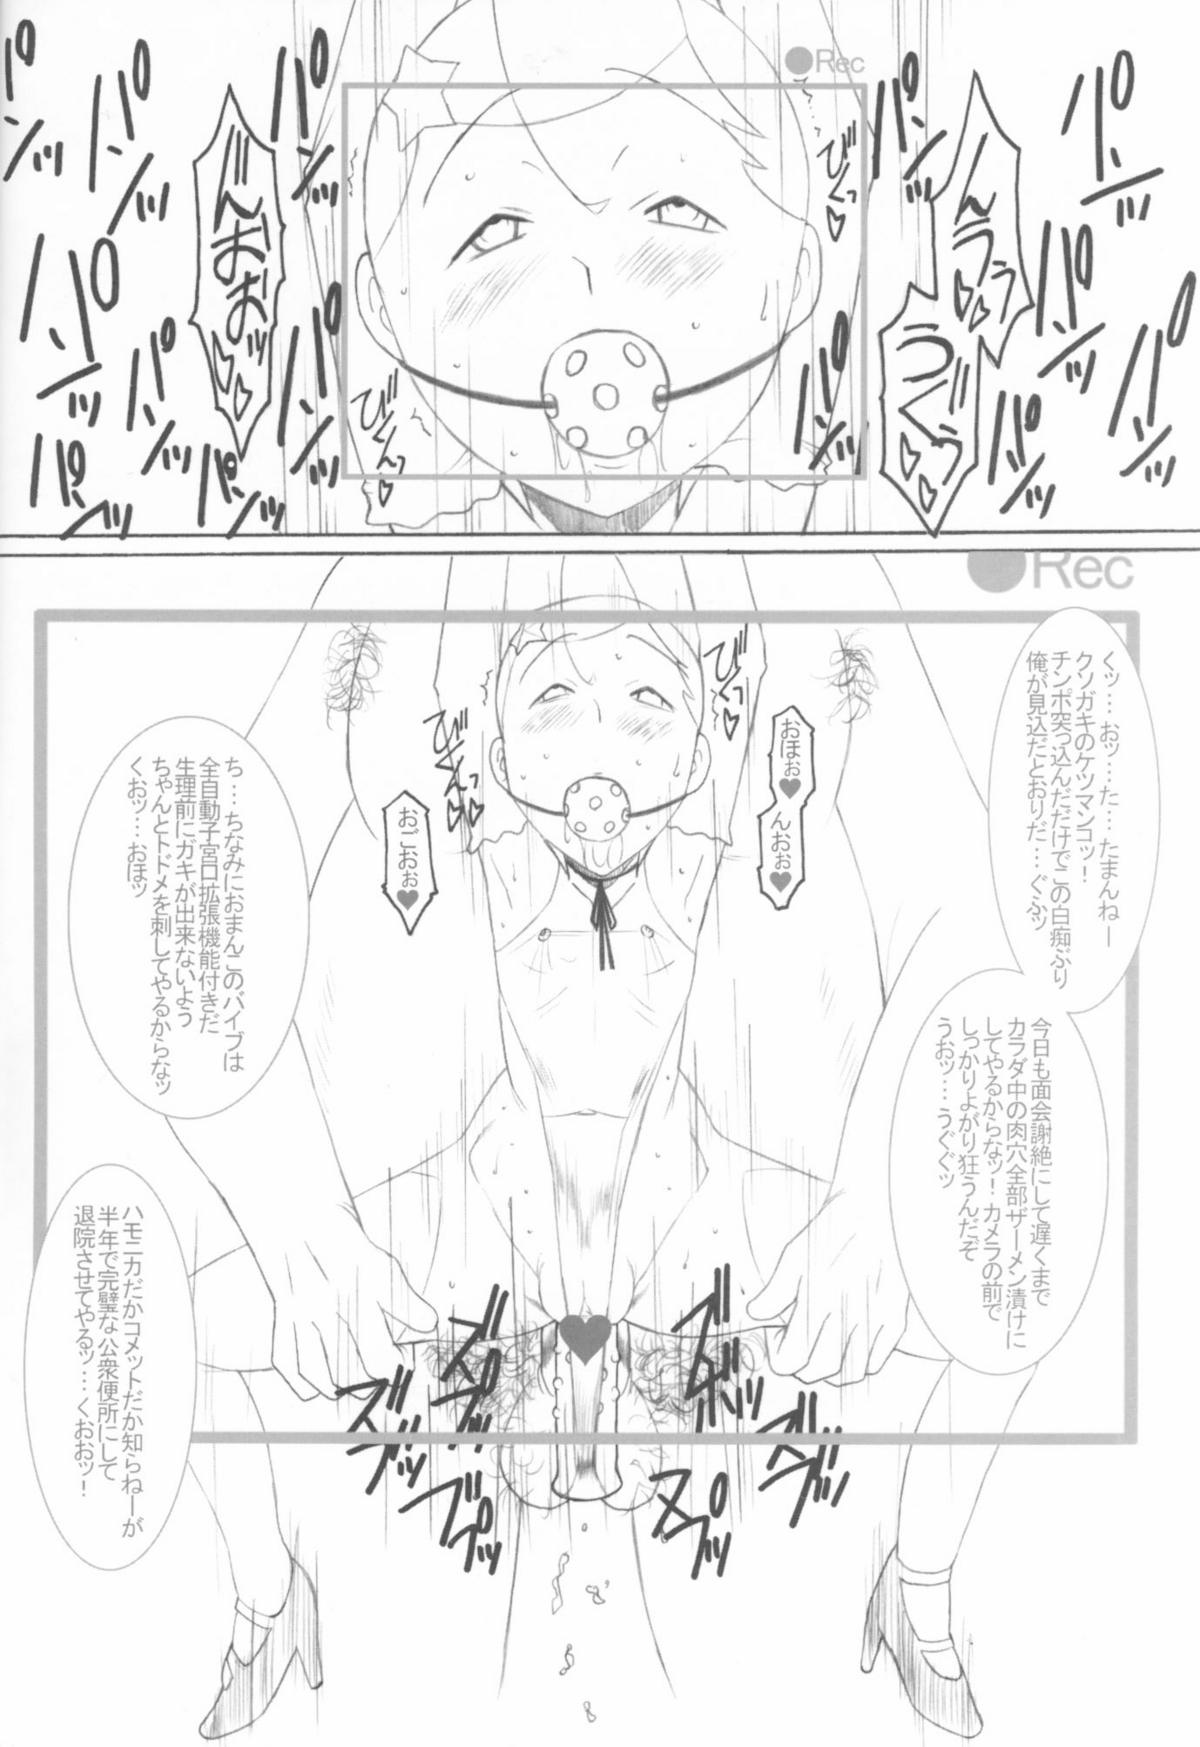 [Land Urchin (千鐘, ゴン平八)] DeathSpell 7 コメットさんはメスブタ (Cosmic Baton Girl コメットさん☆)